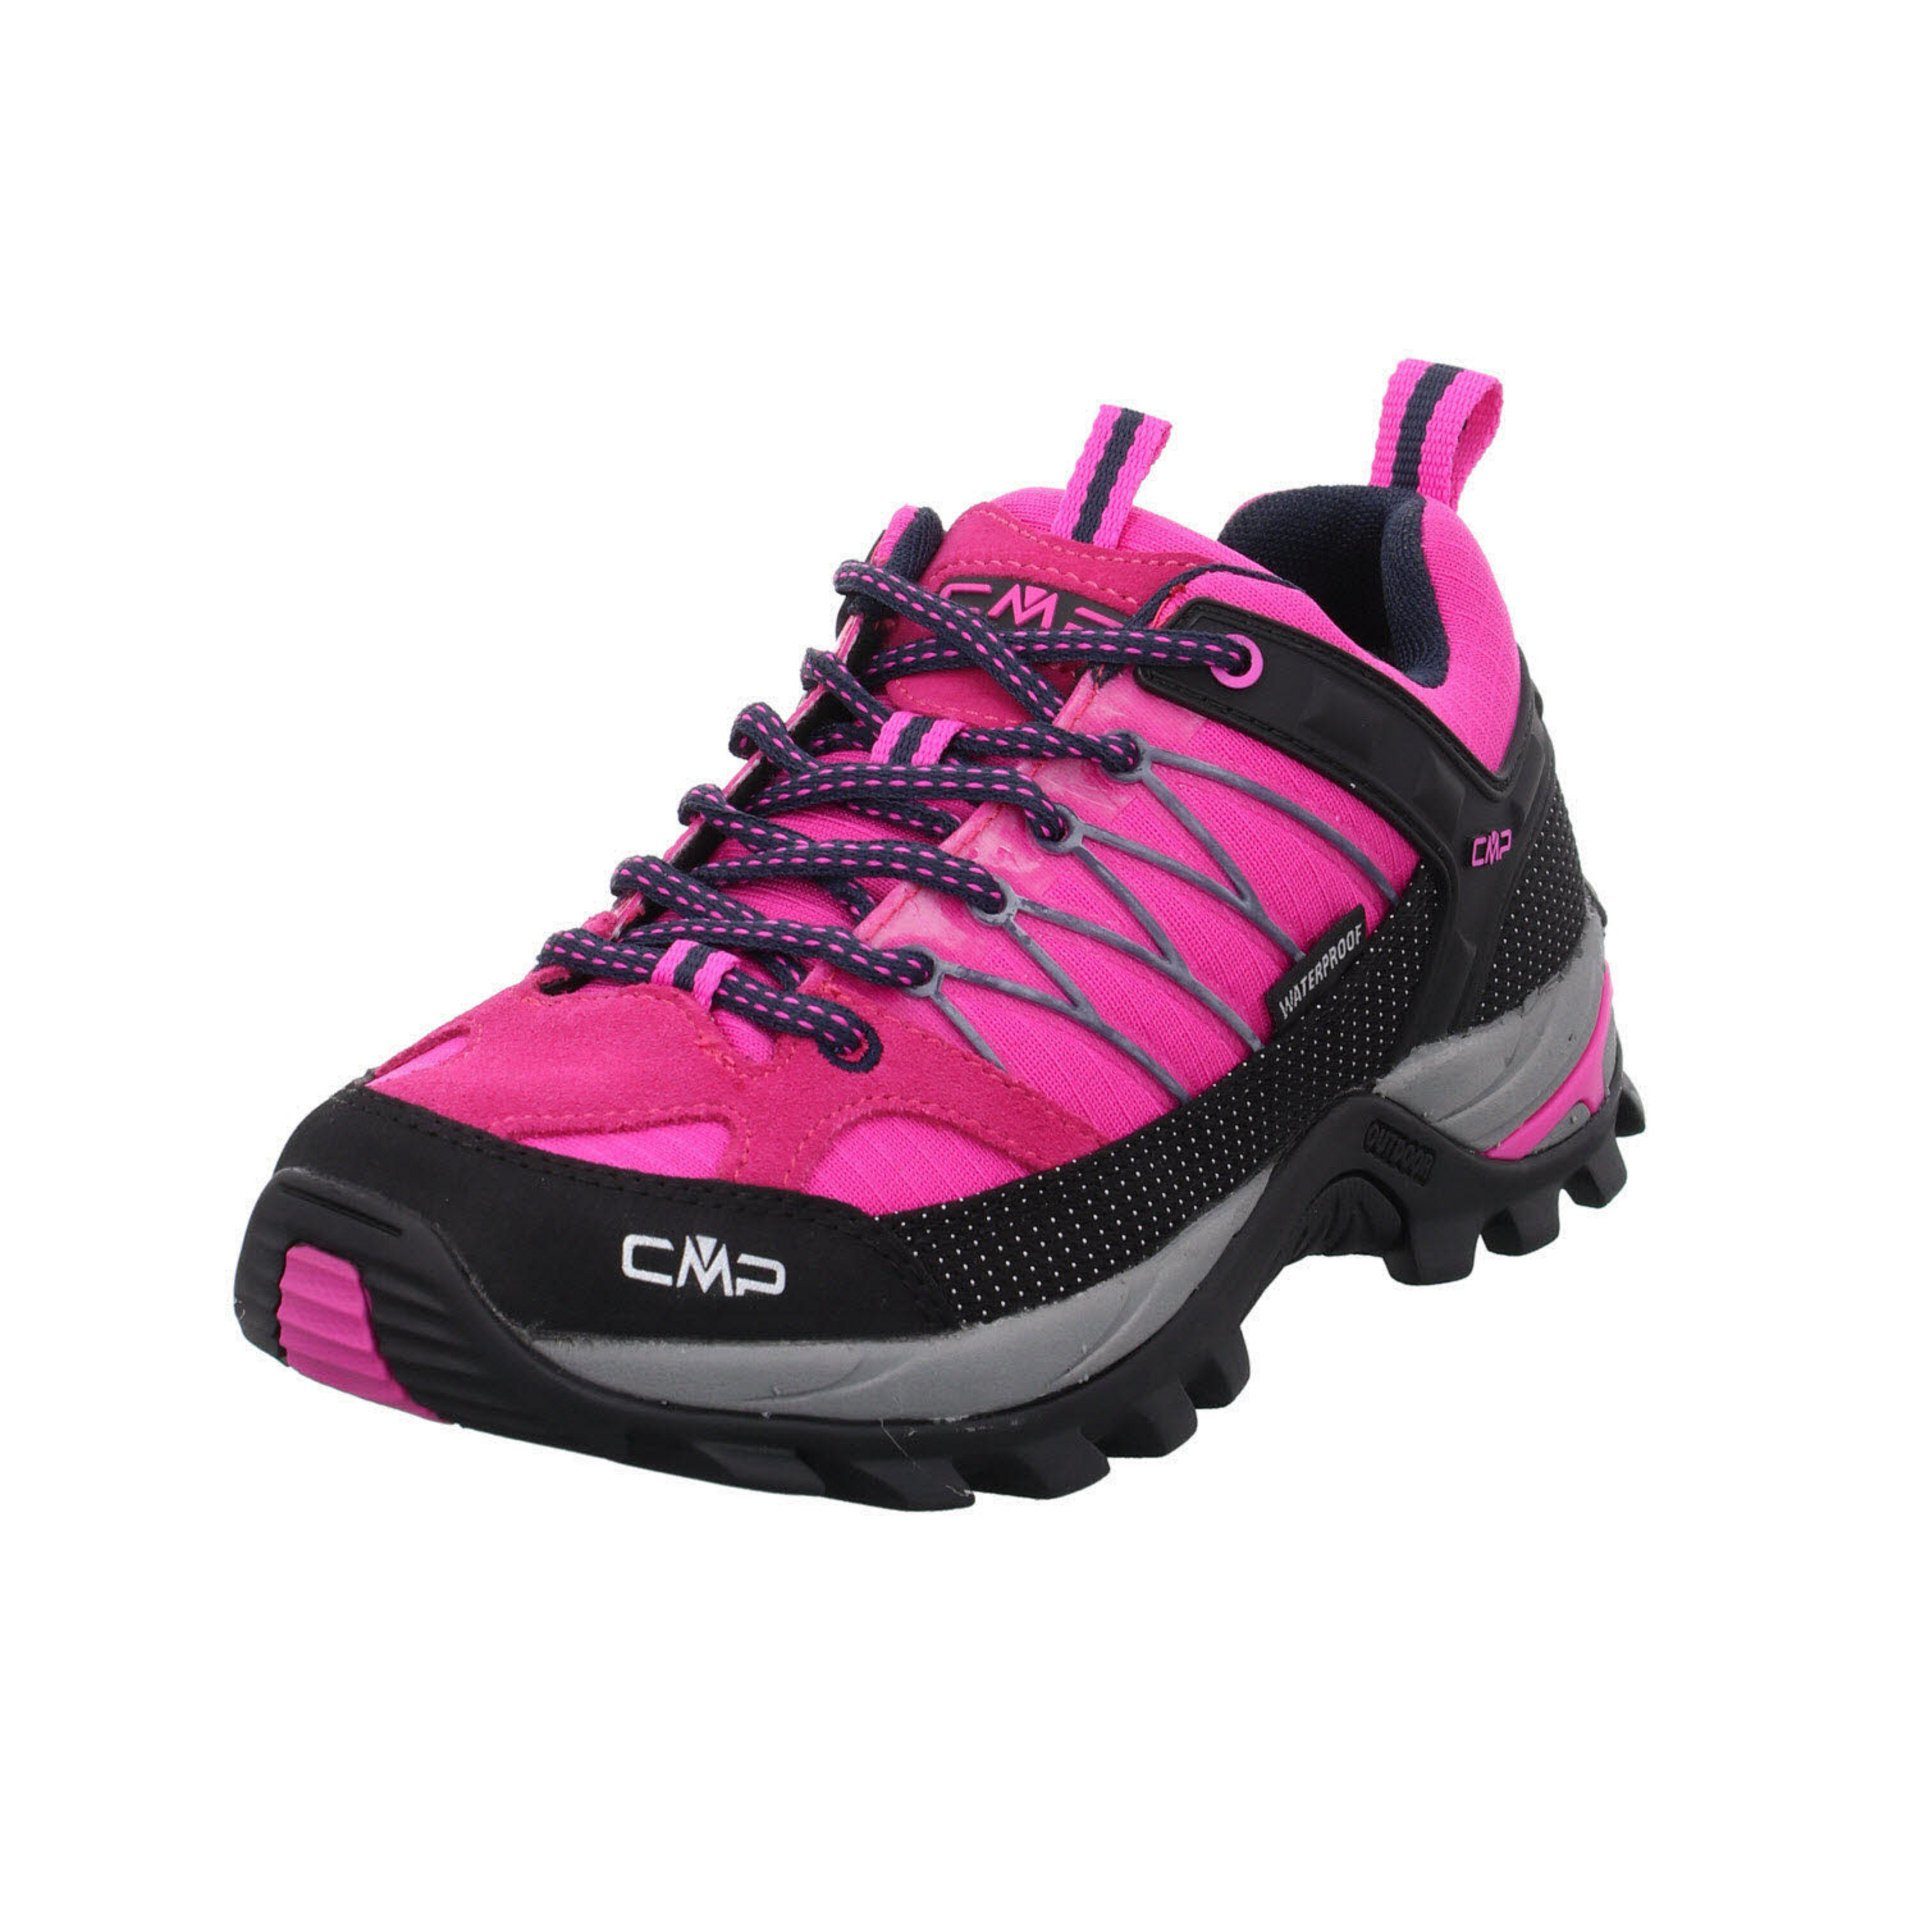 CMP Damen Schuhe Outdoor Outdoorschuh Leder-/Textilkombination pink Rigel fluo-b.blue Low (03201886) Outdoorschuh